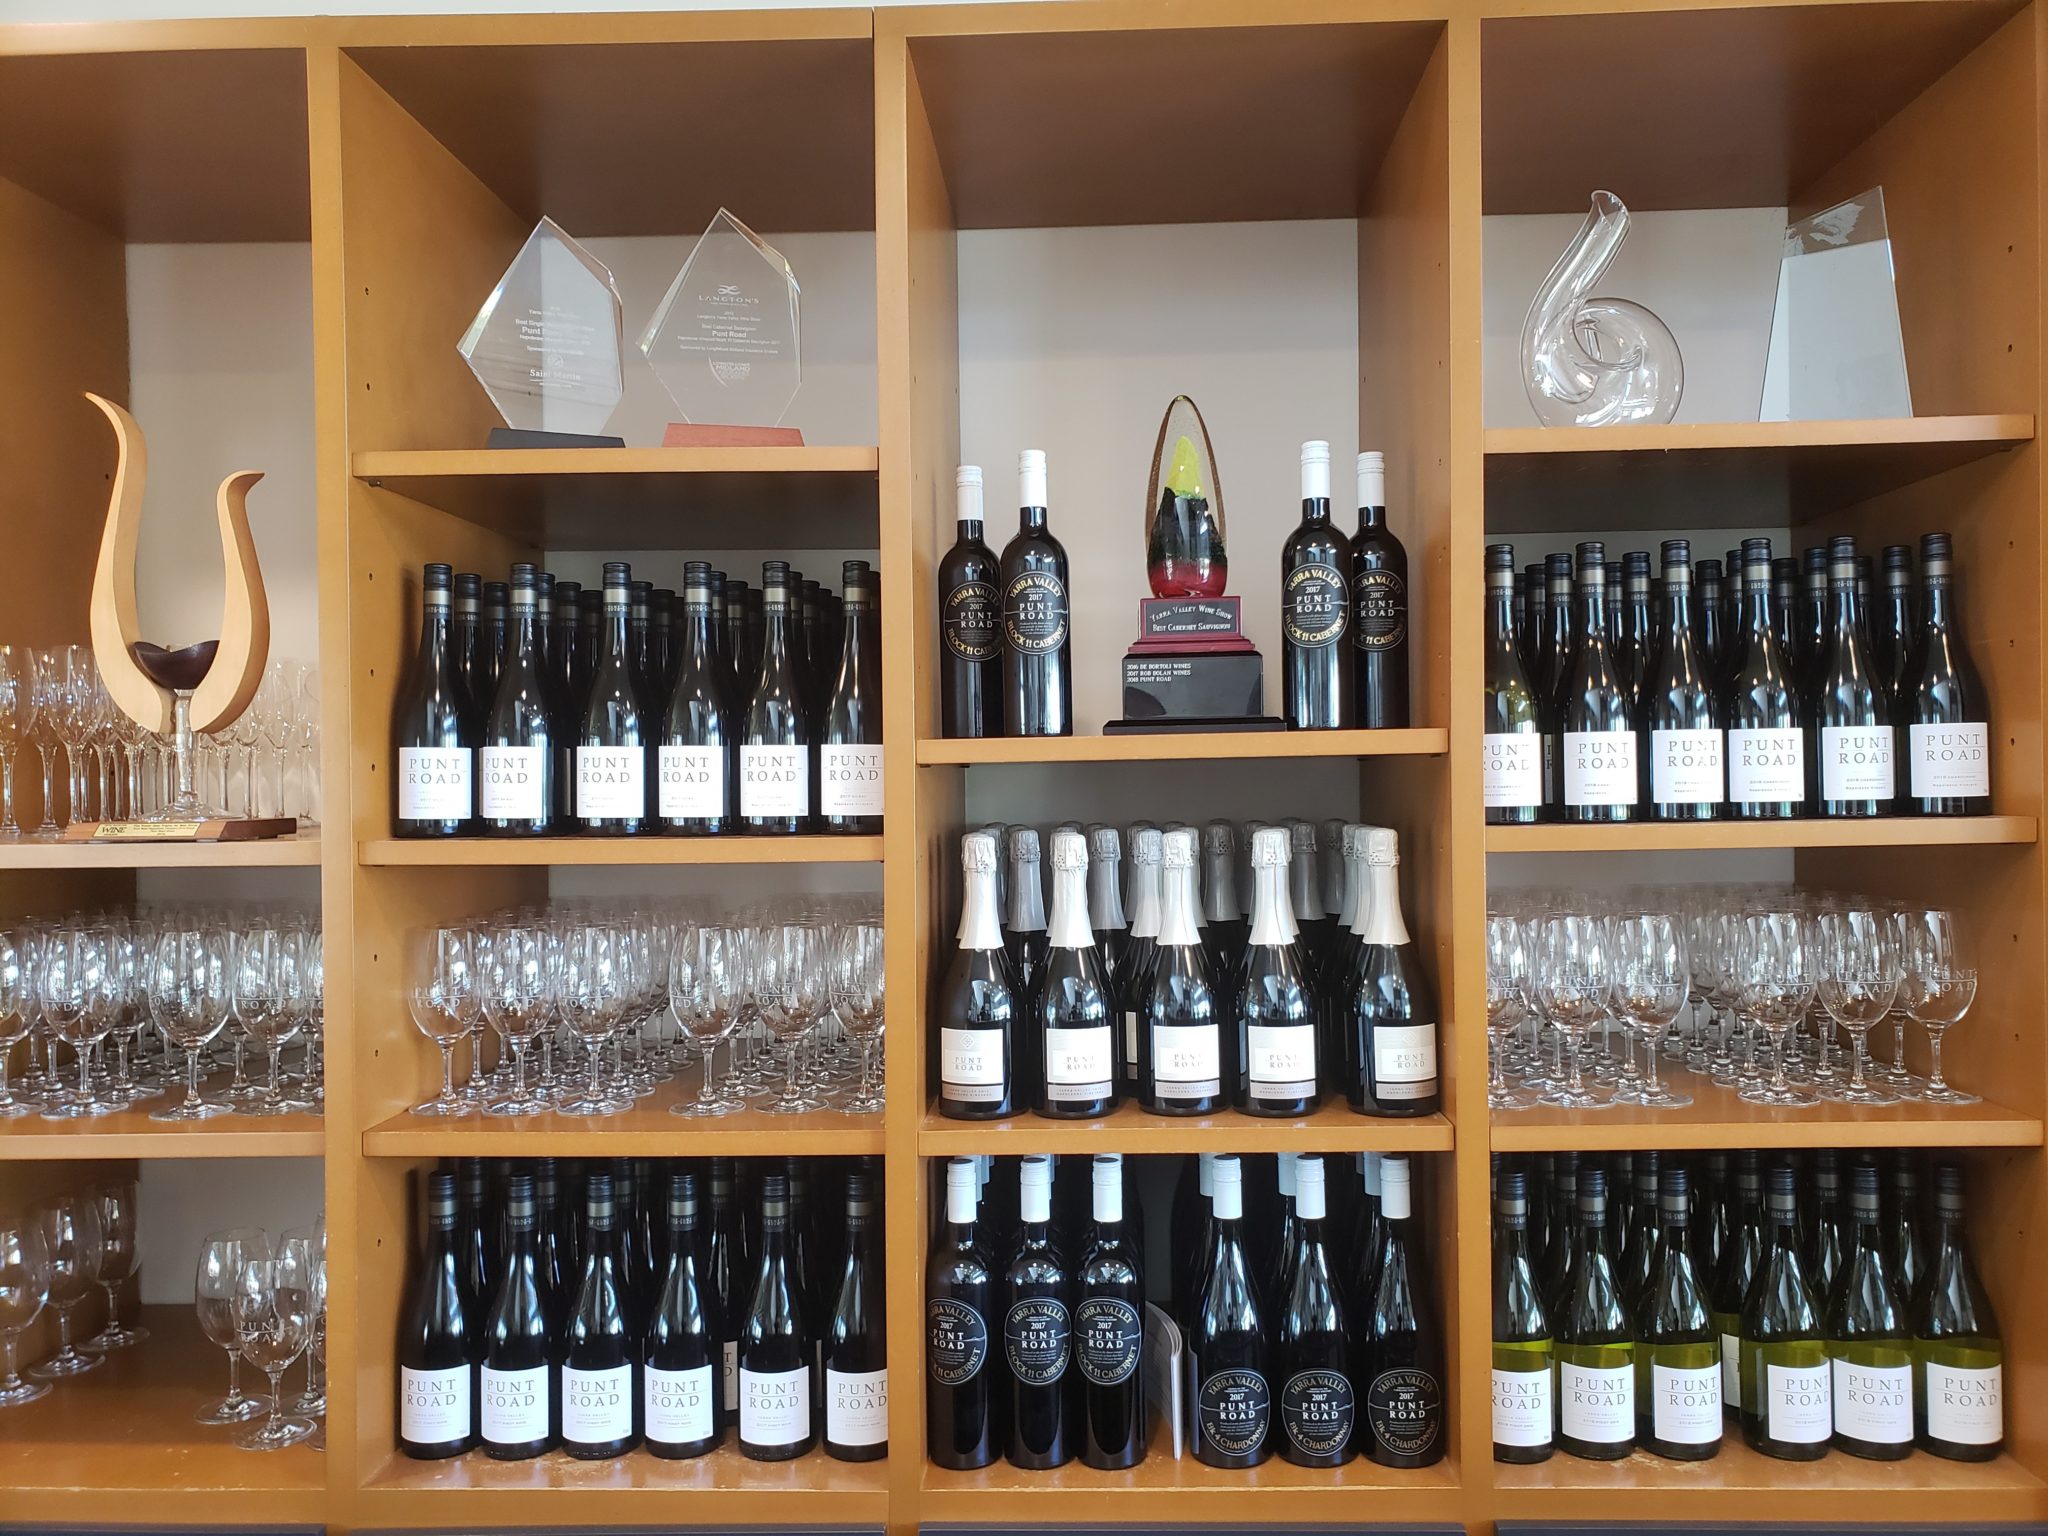 shelves of wine bottles and glasses on shelves